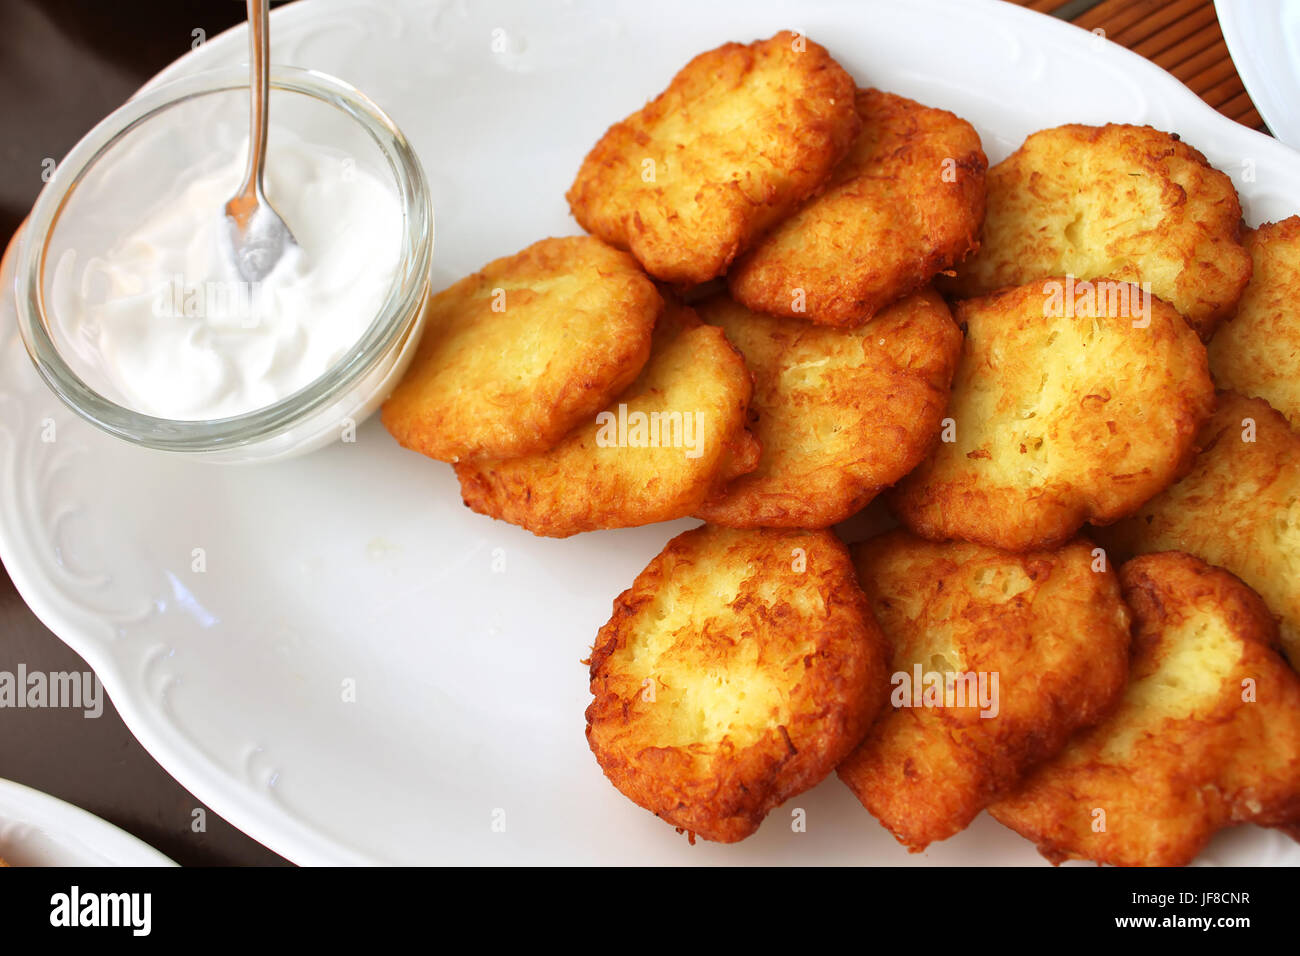 Tasty potato pancakes with sauce on white plate, closeup Stock Photo